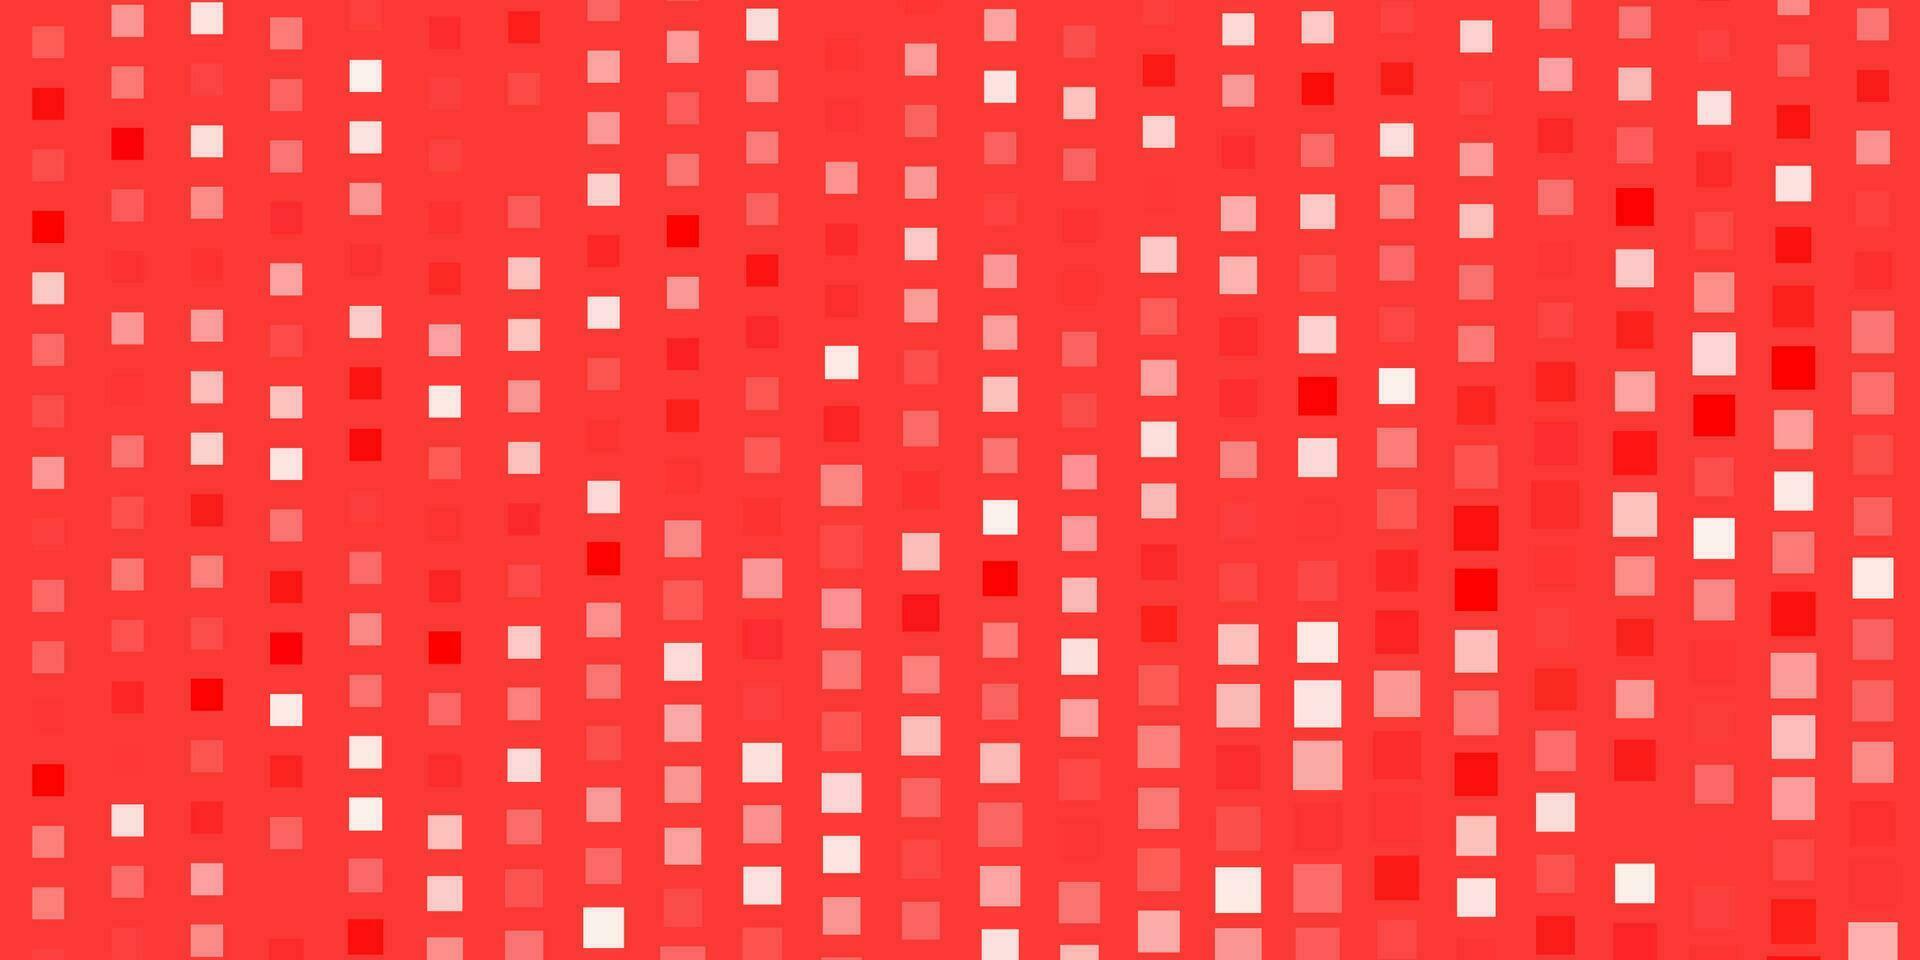 ljusröd vektormall med rektanglar. vektor